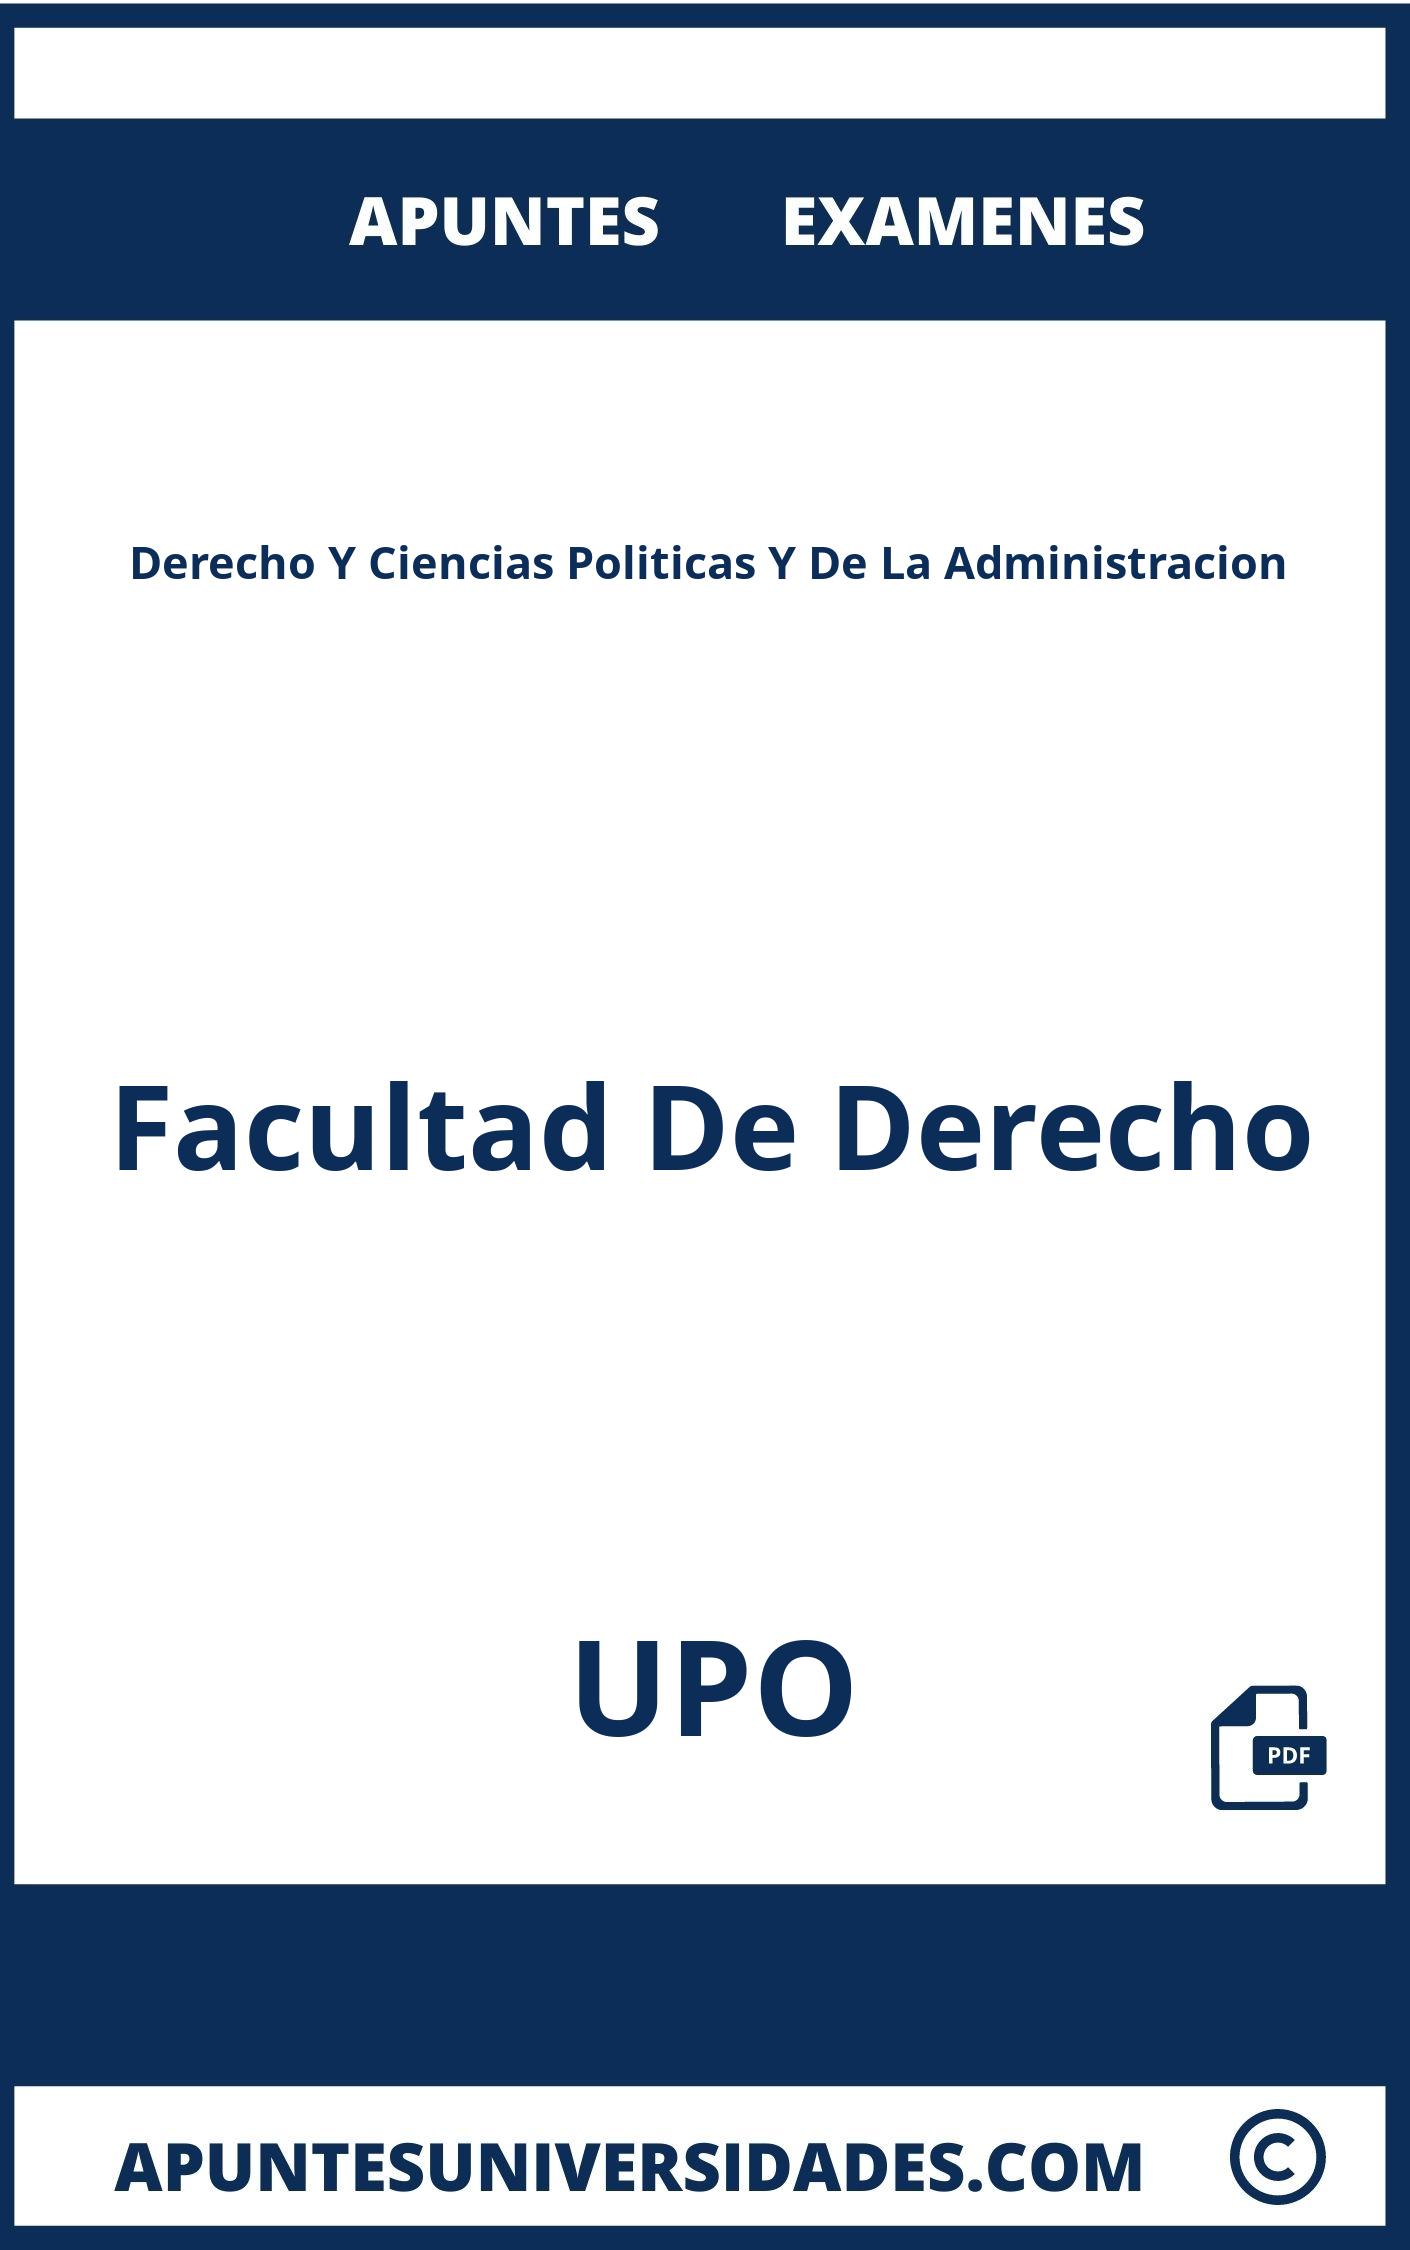 Apuntes Examenes Derecho Y Ciencias Politicas Y De La Administracion UPO